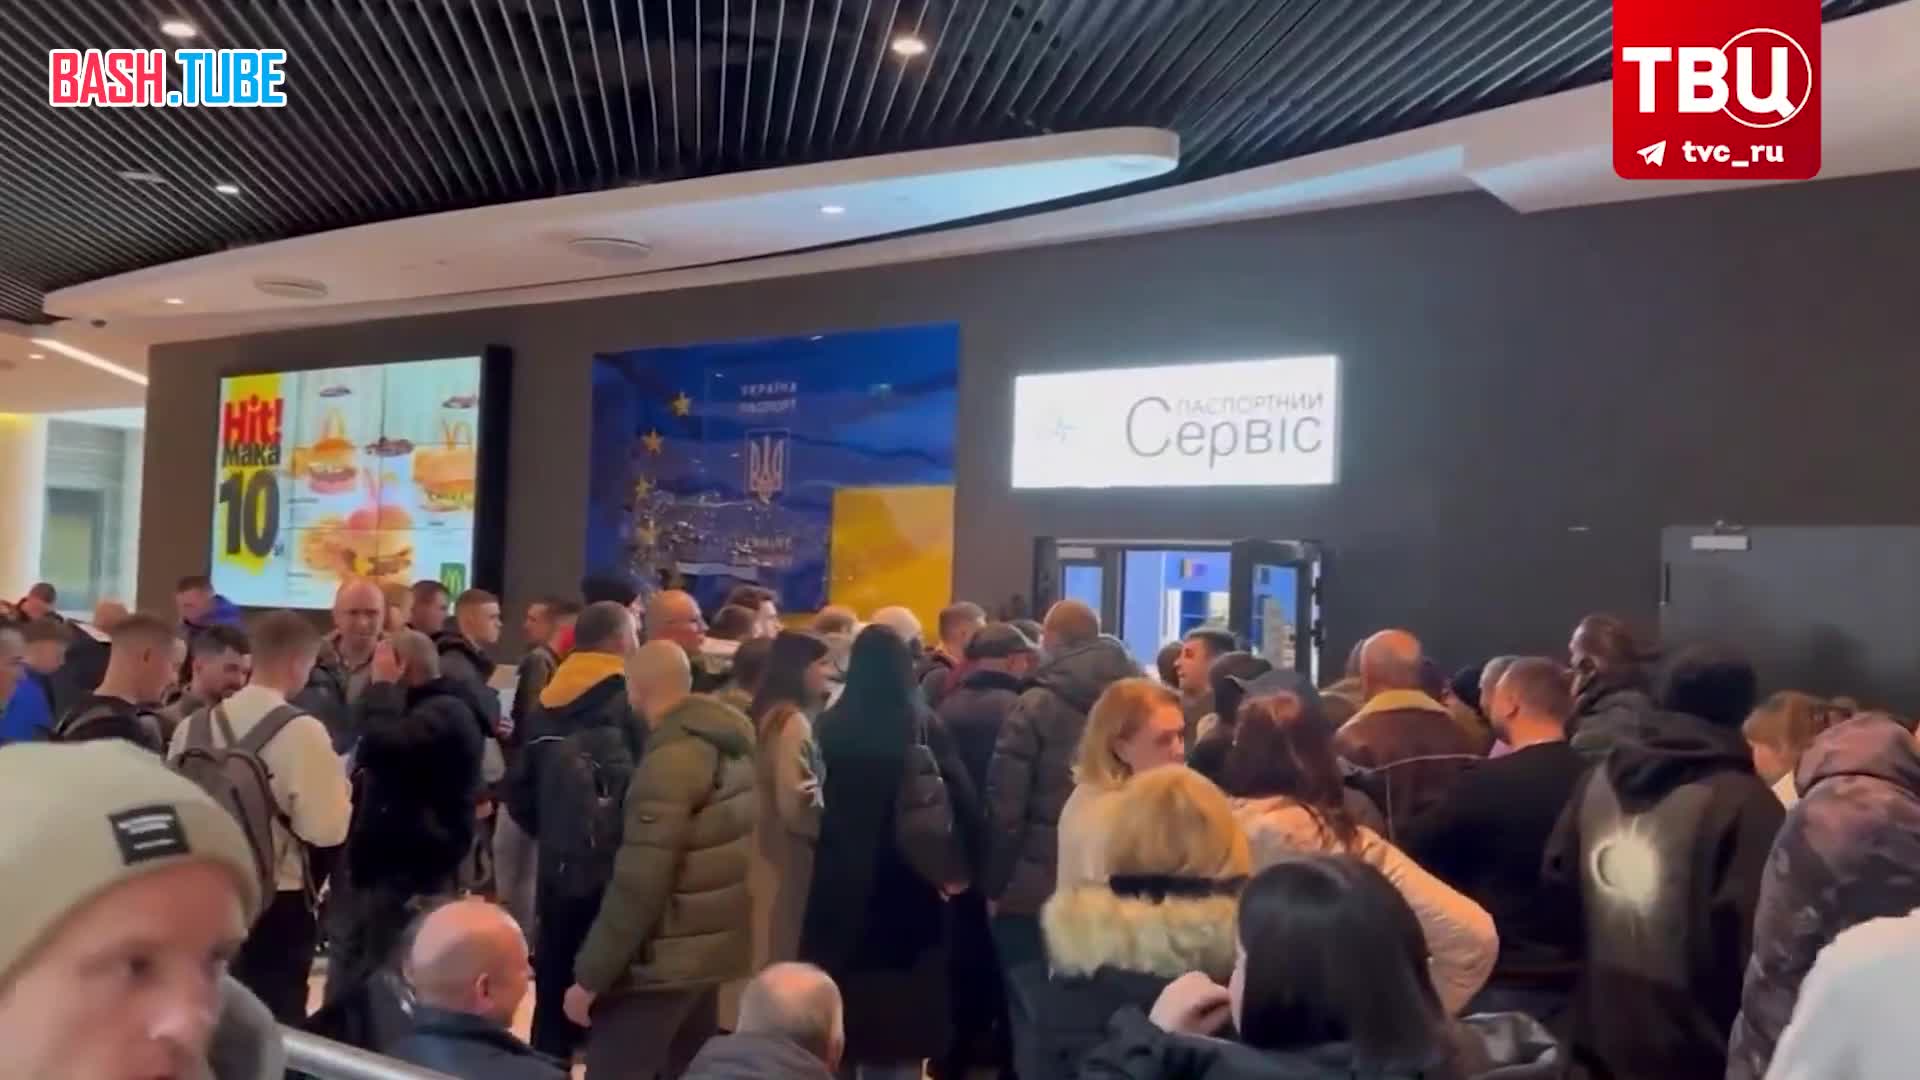  Украинцы встали в очереди за паспортами в Варшаве на фоне планов по мобилизации